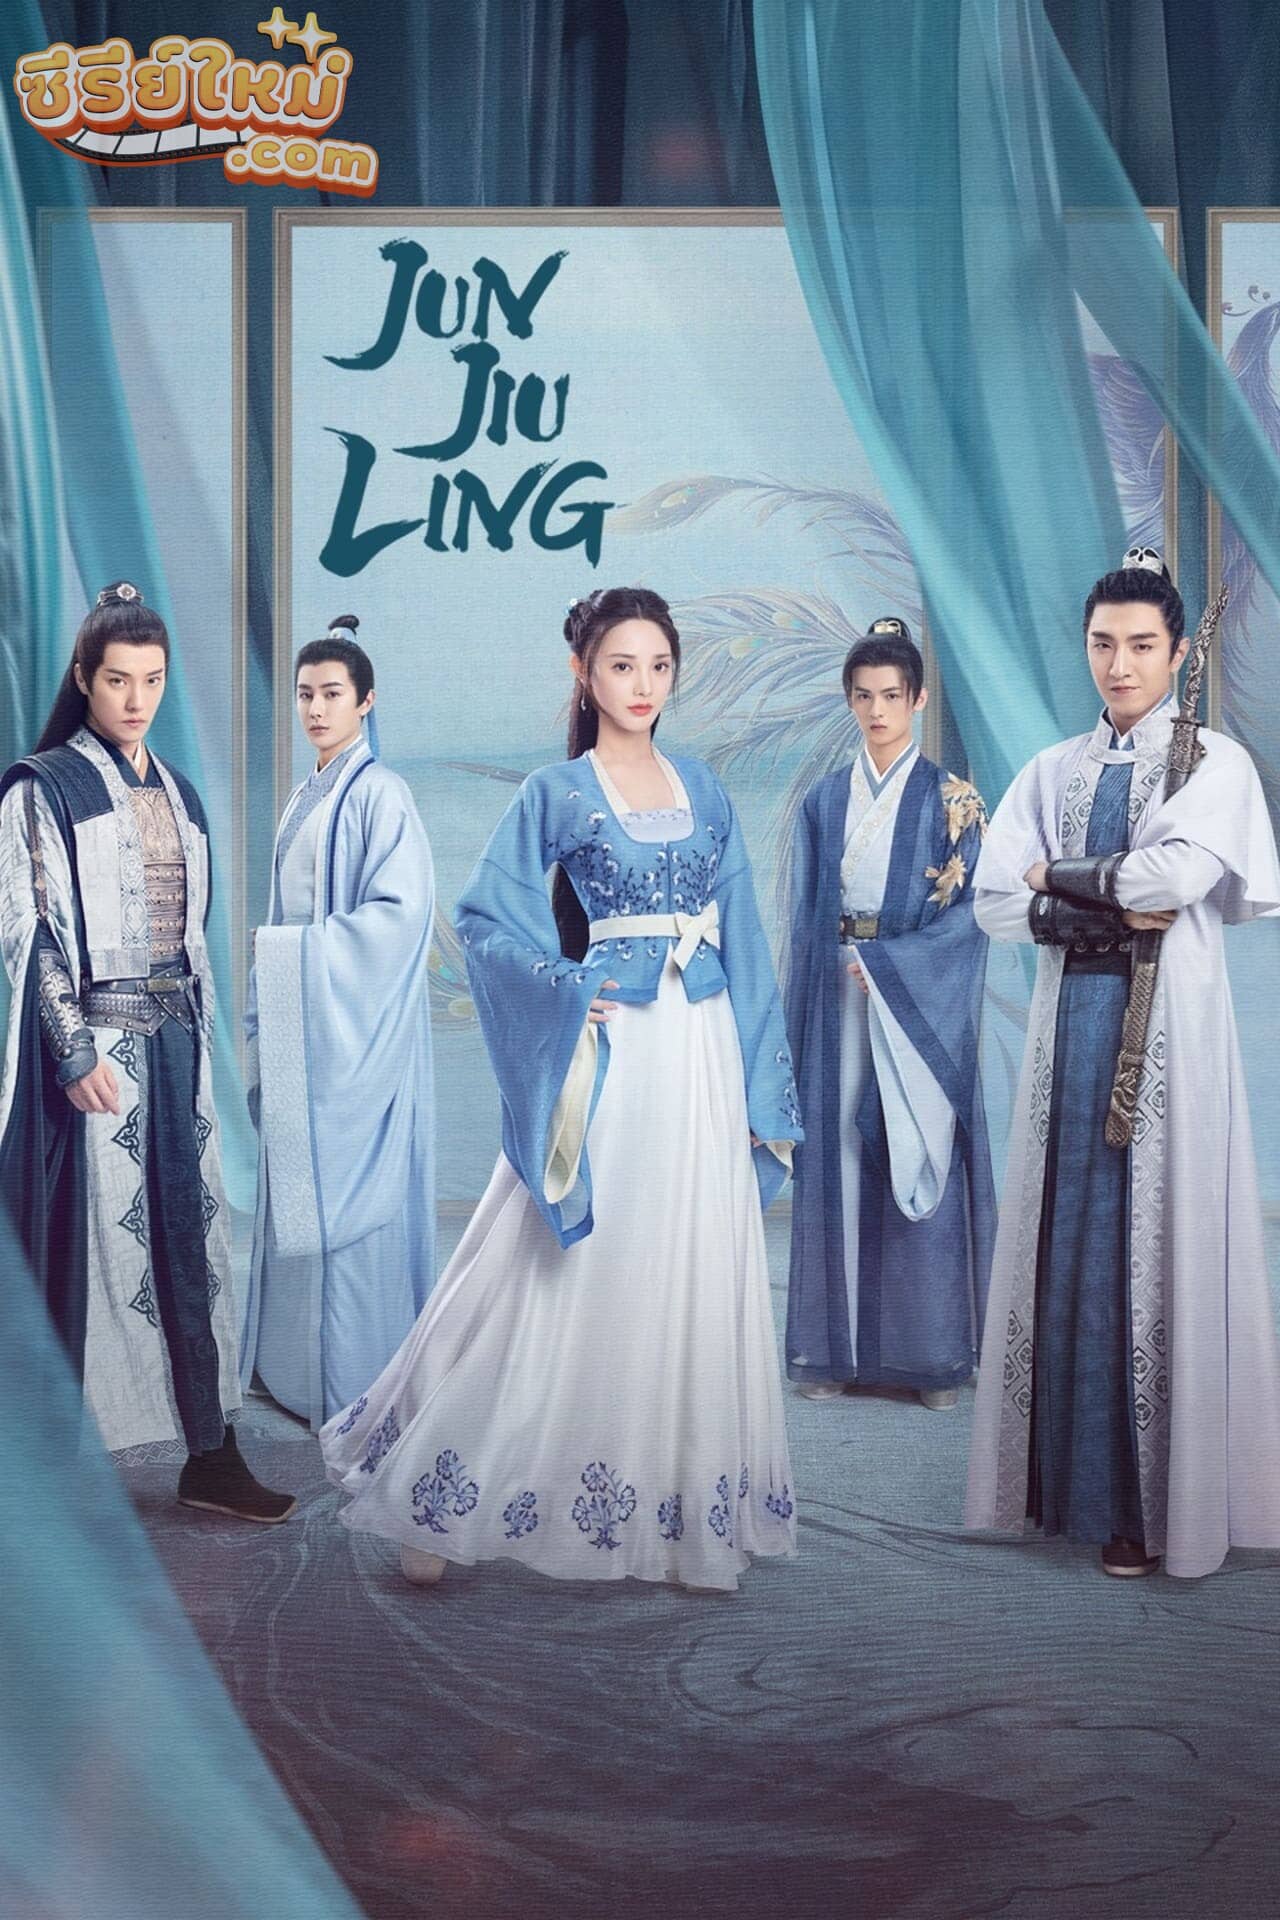 Jun Jiu Ling หวนชะตารัก (2021)